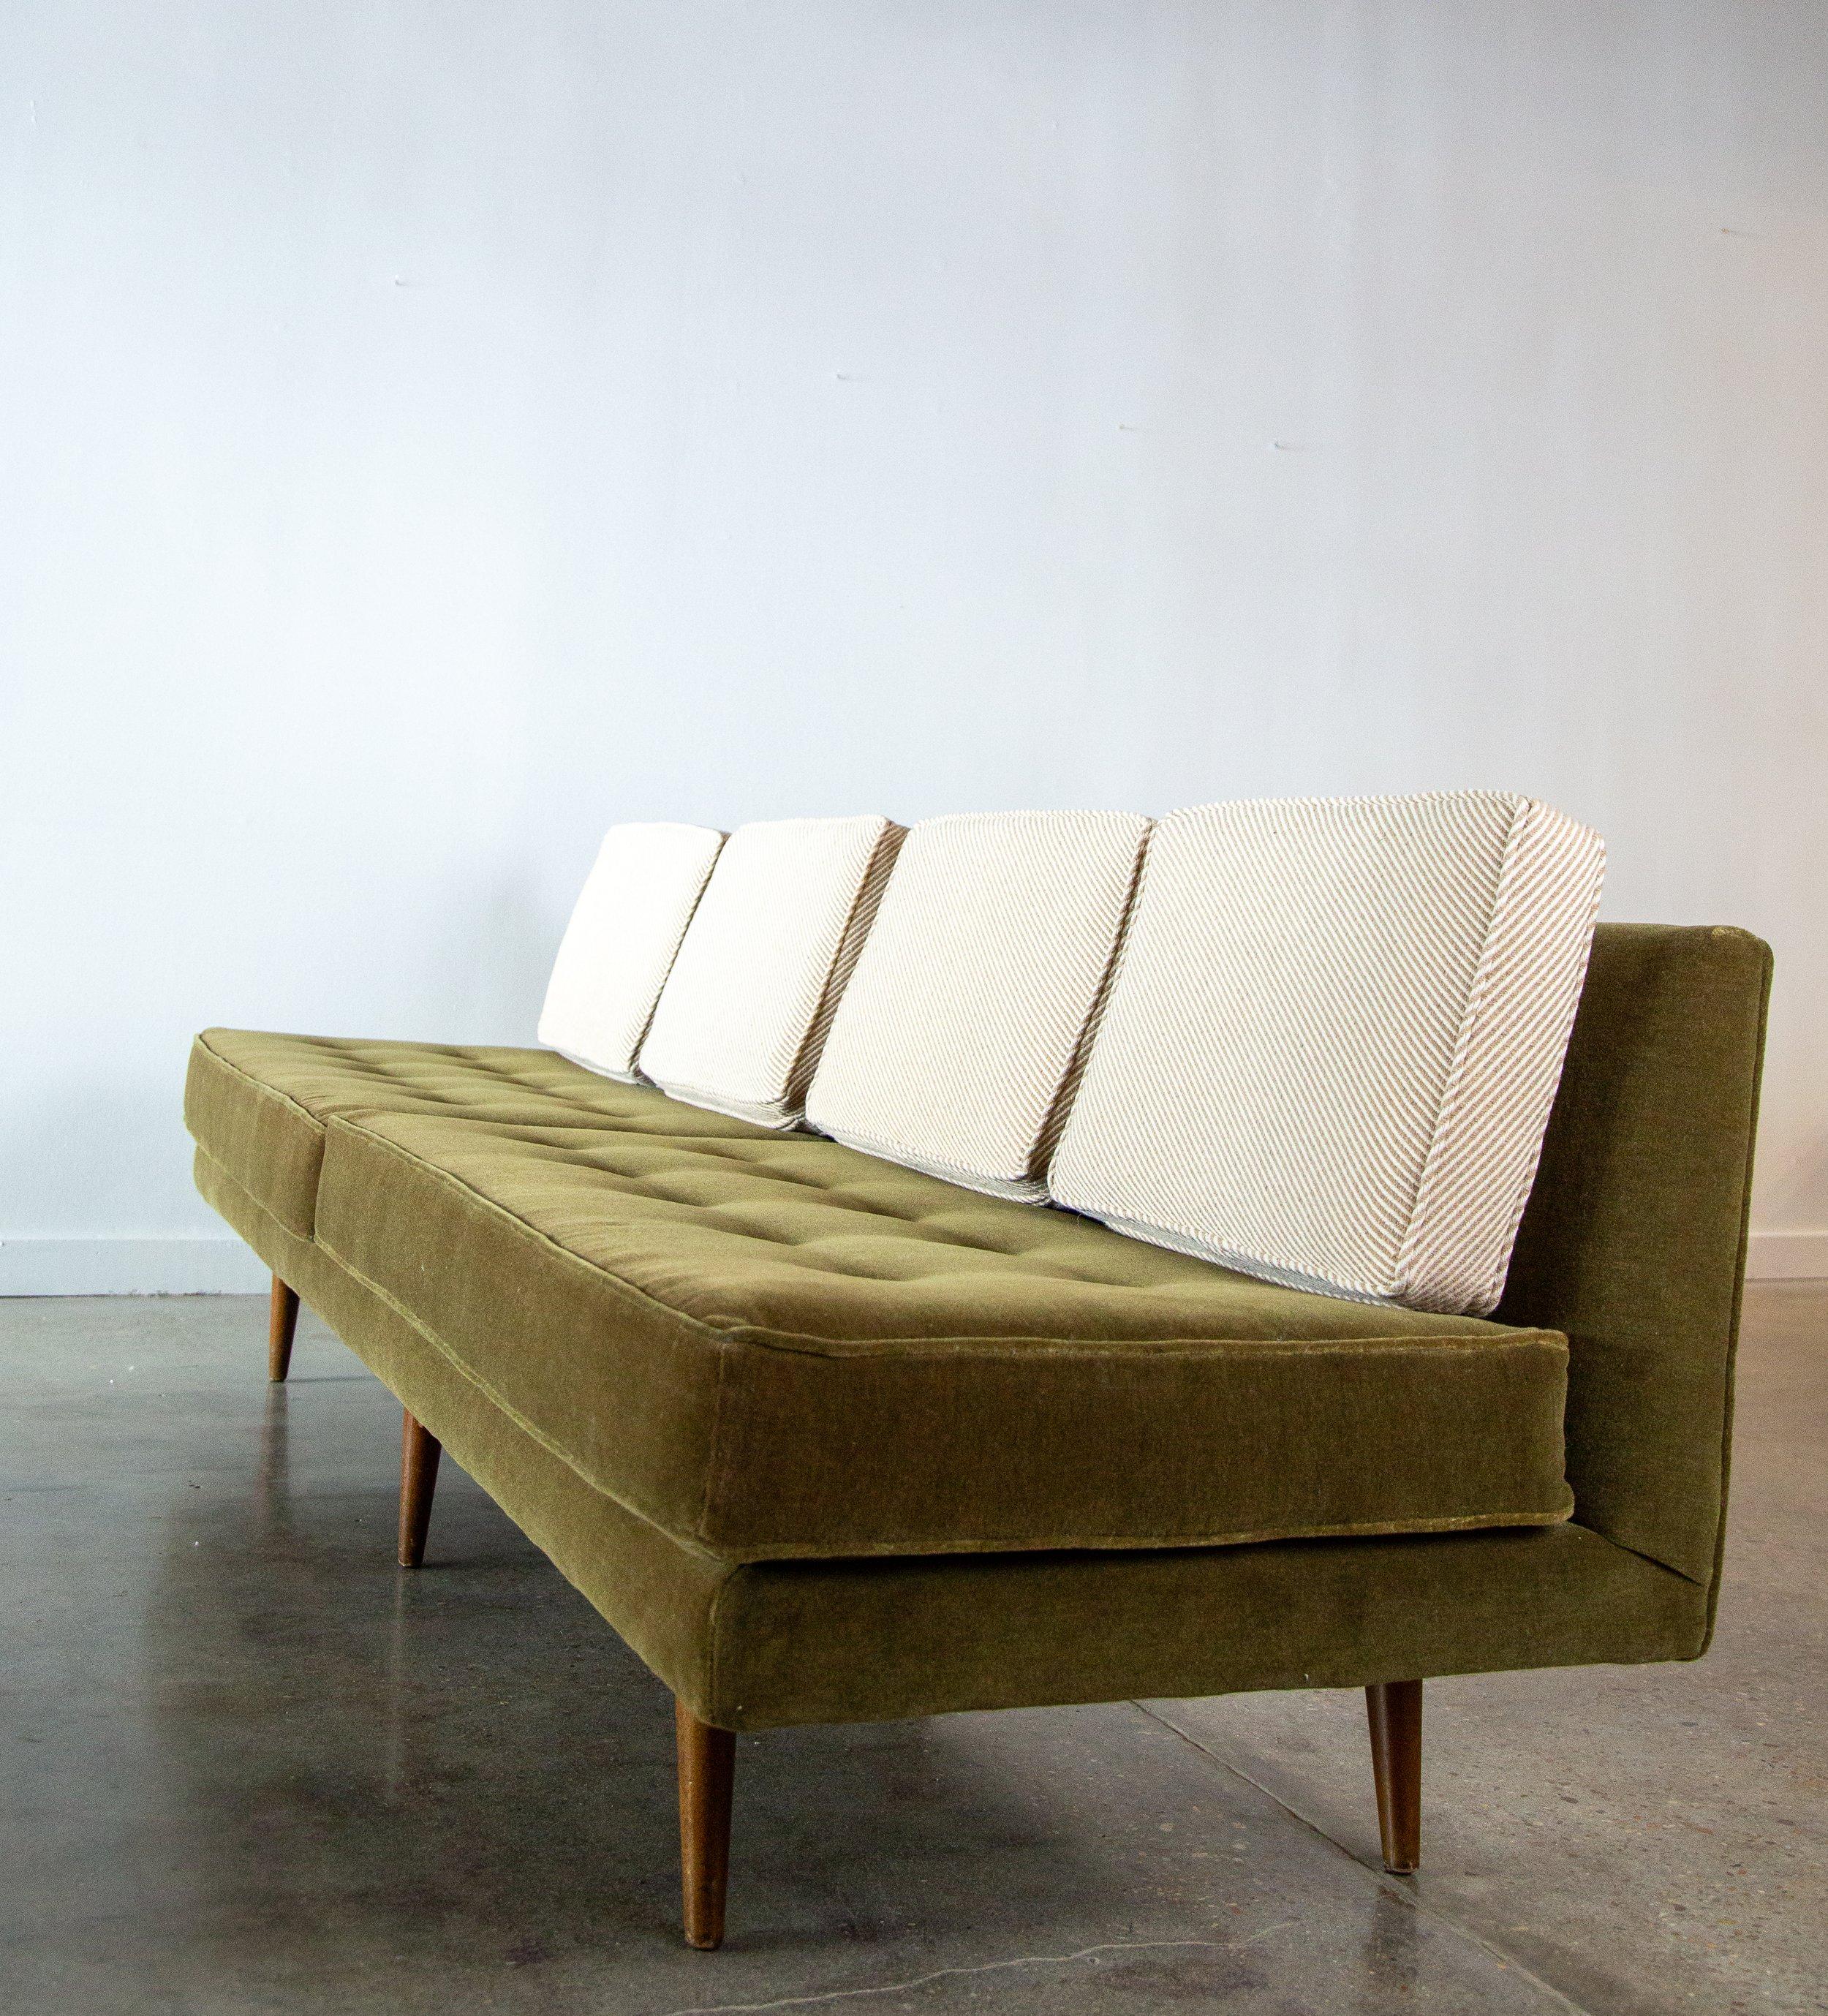 Ein ikonisches armloses Sofa aus den 1950er Jahren, entworfen von Edward Wormley für Dunbar Furniture, Modell 5526. Neu gepolstert mit grünem Mohairbezug und neutralen, diagonal gestreiften, losen Wollkissen.  Eine sehr luftige Form A das Sofa sieht